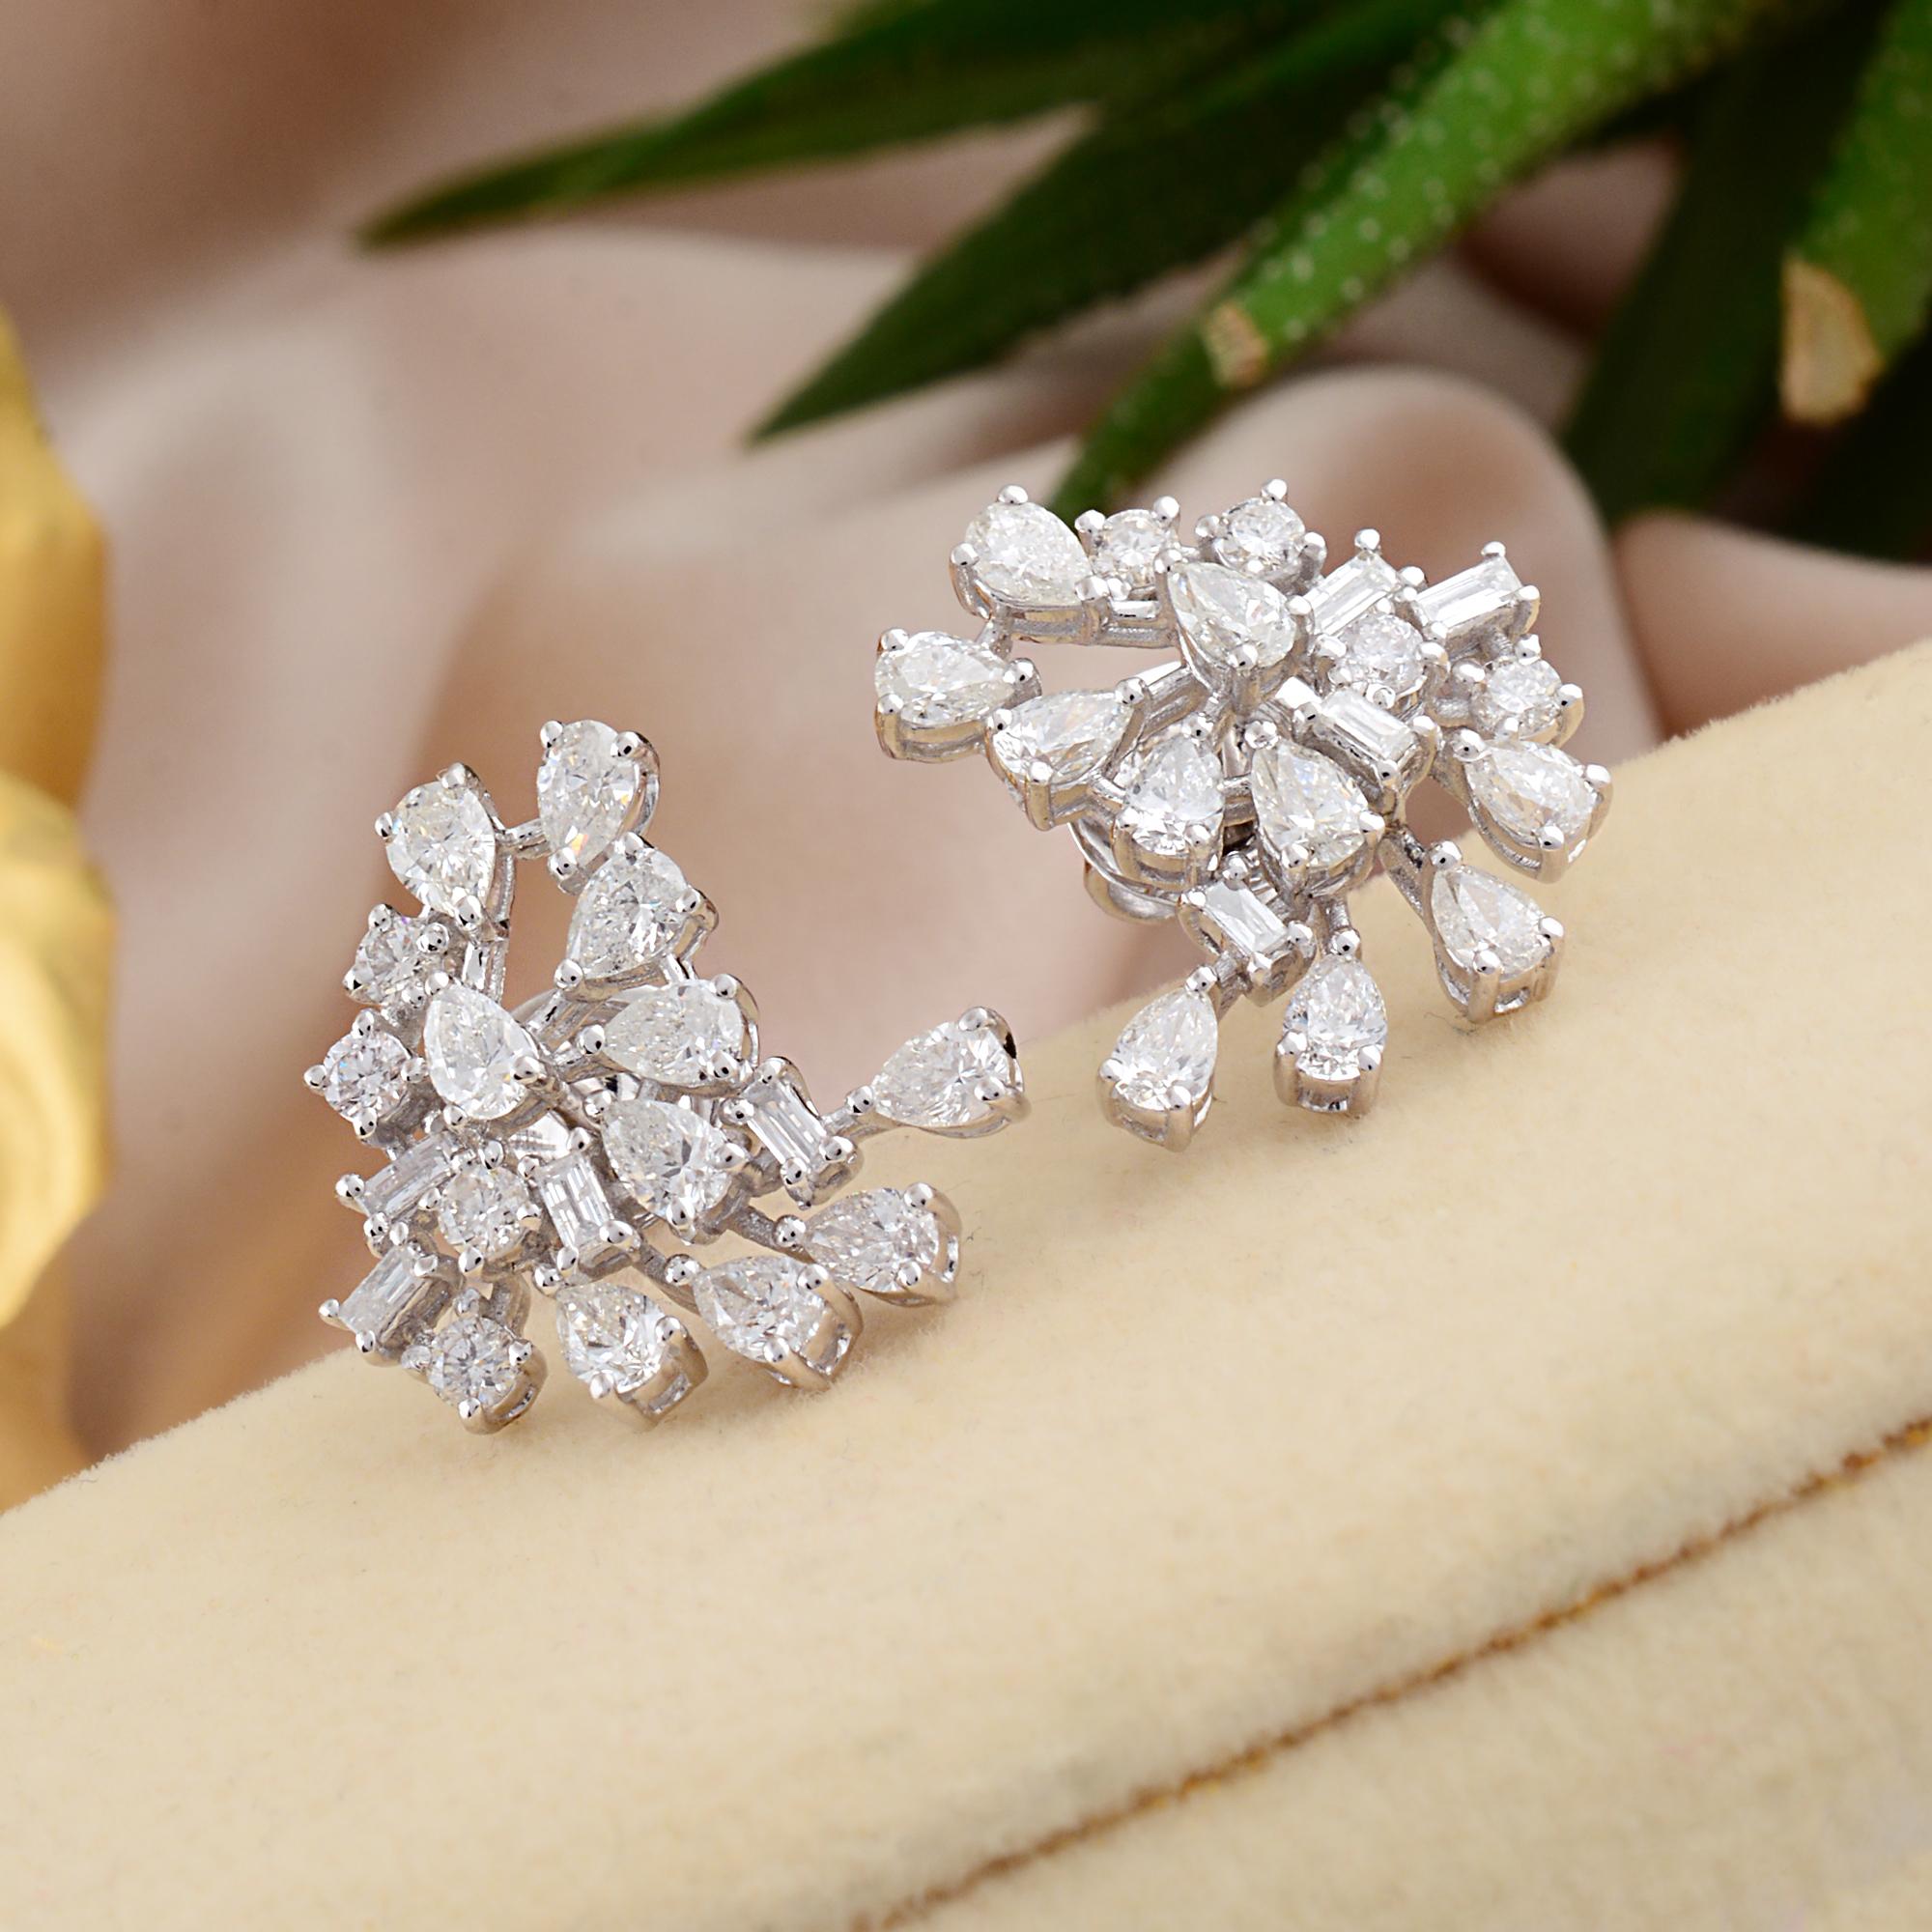 Modern 2.31 Carat Pear Baguette Diamond Stud Earrings Solid 18k White Gold Fine Jewelry For Sale